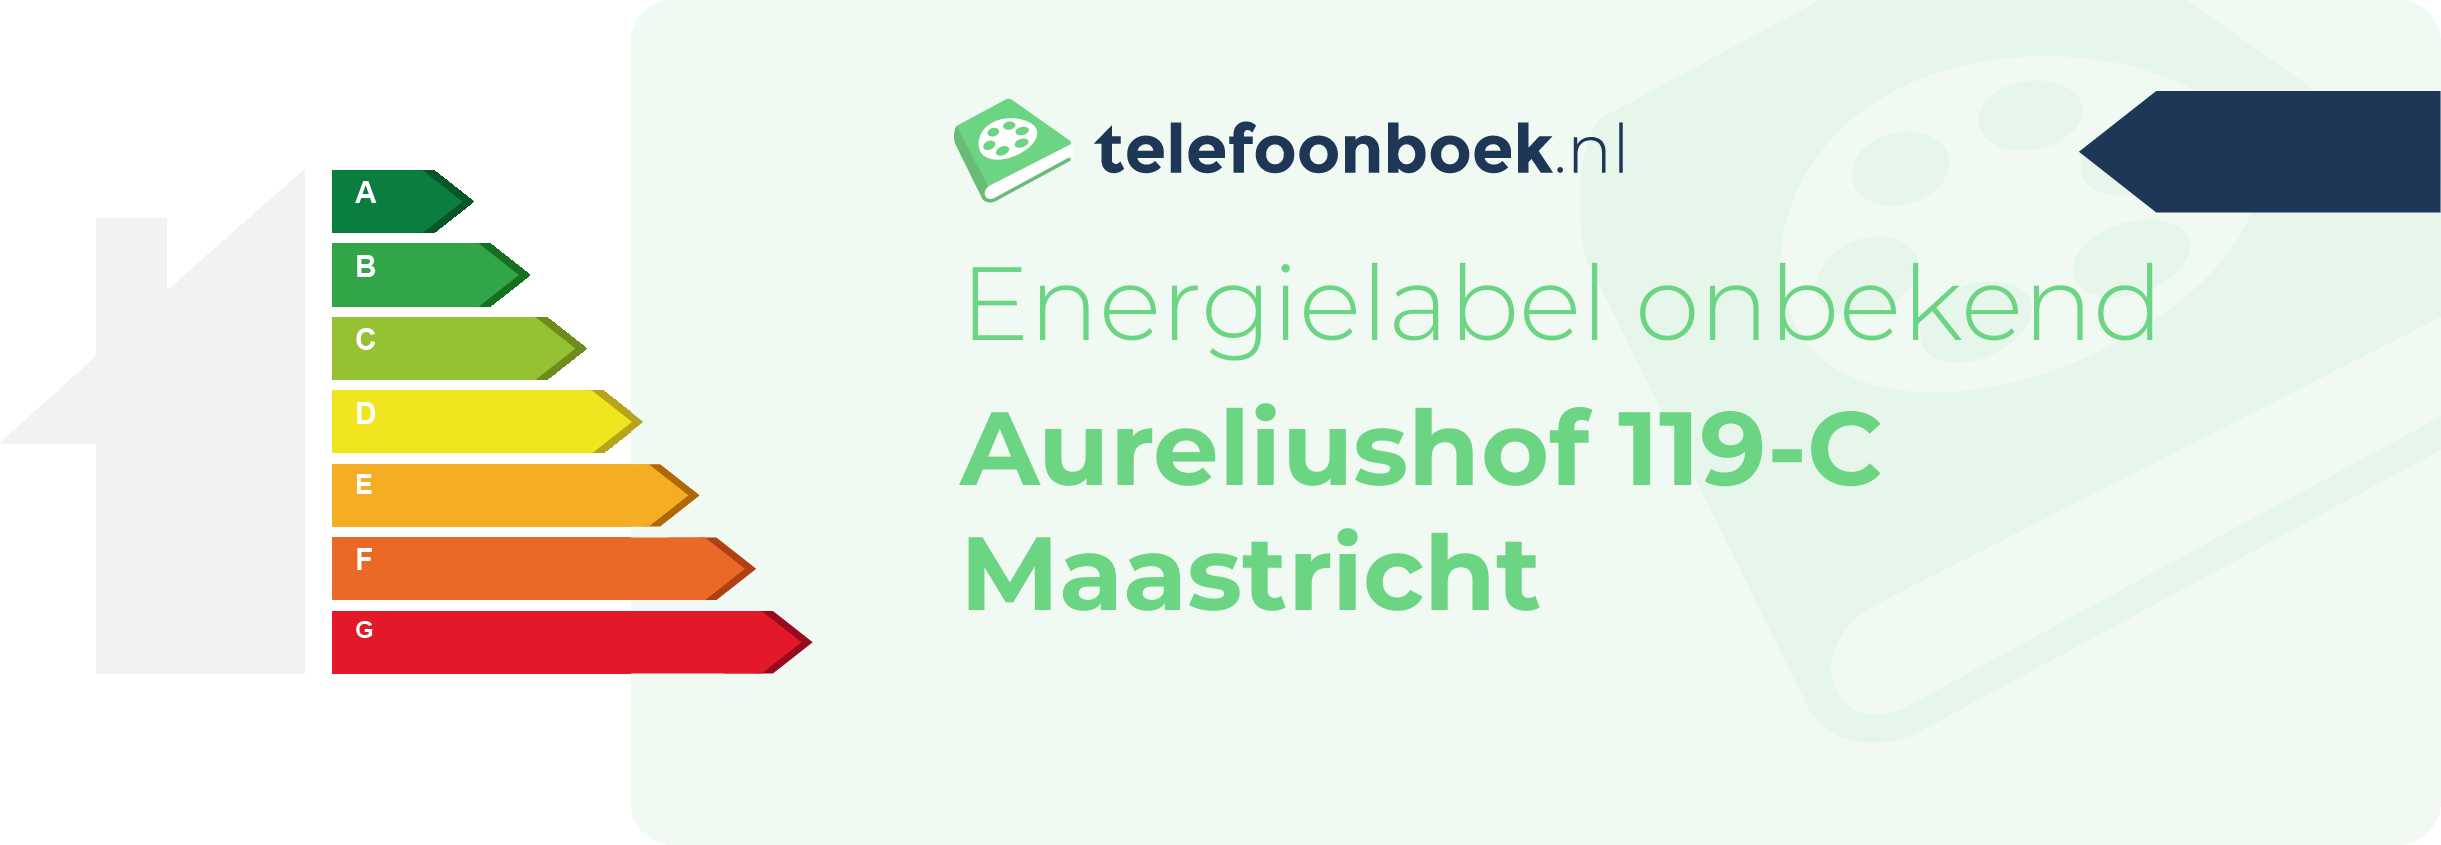 Energielabel Aureliushof 119-C Maastricht